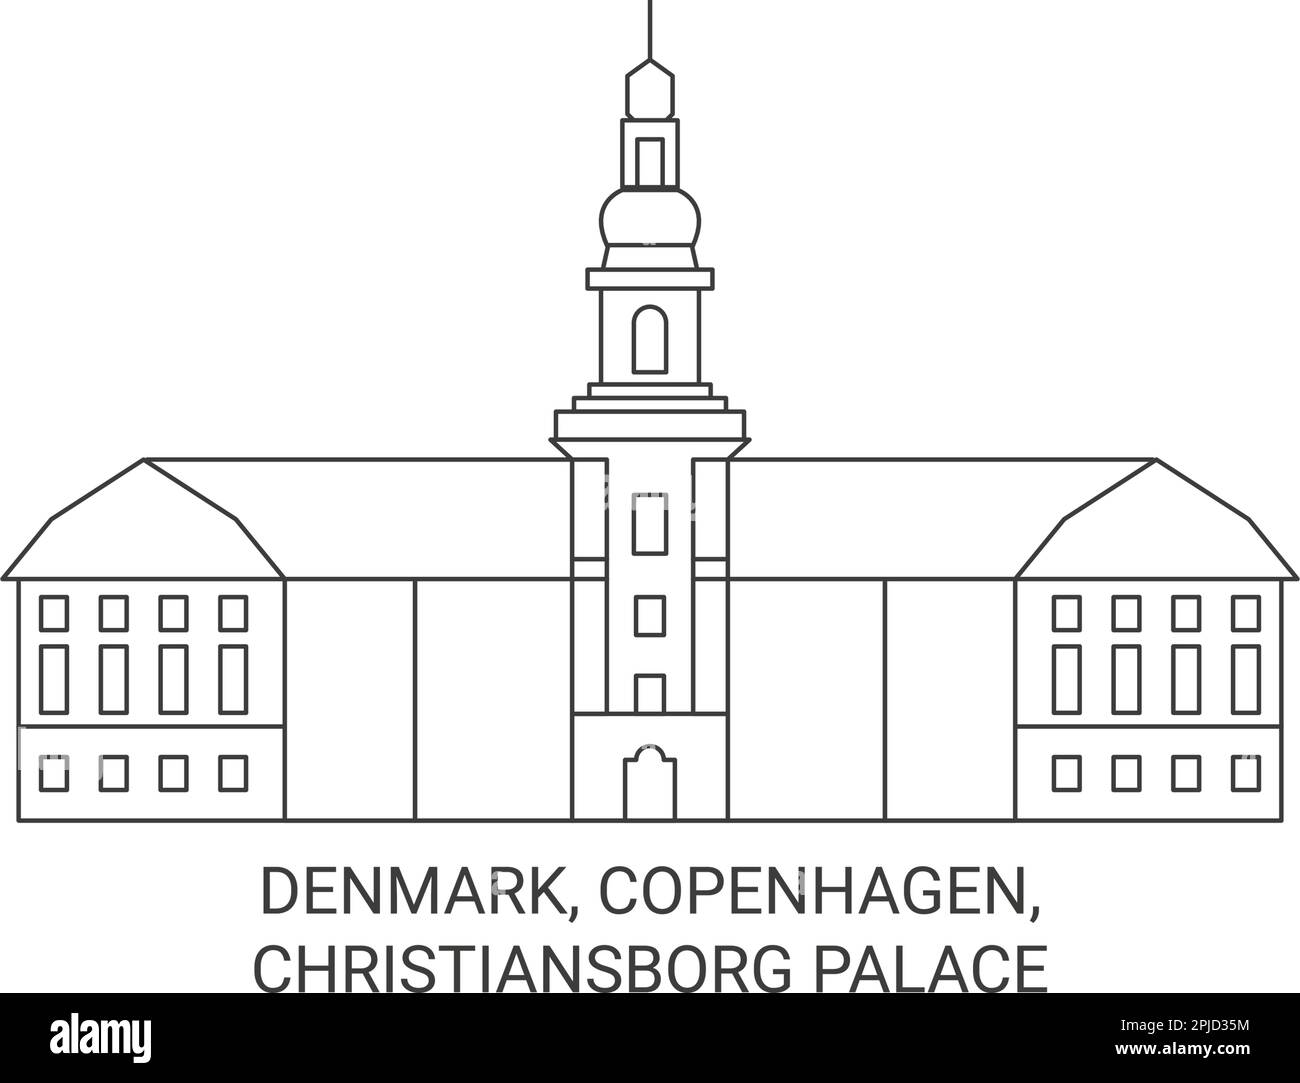 Denmark, Copenhagen, Christiansborg Palace travel landmark vector ...